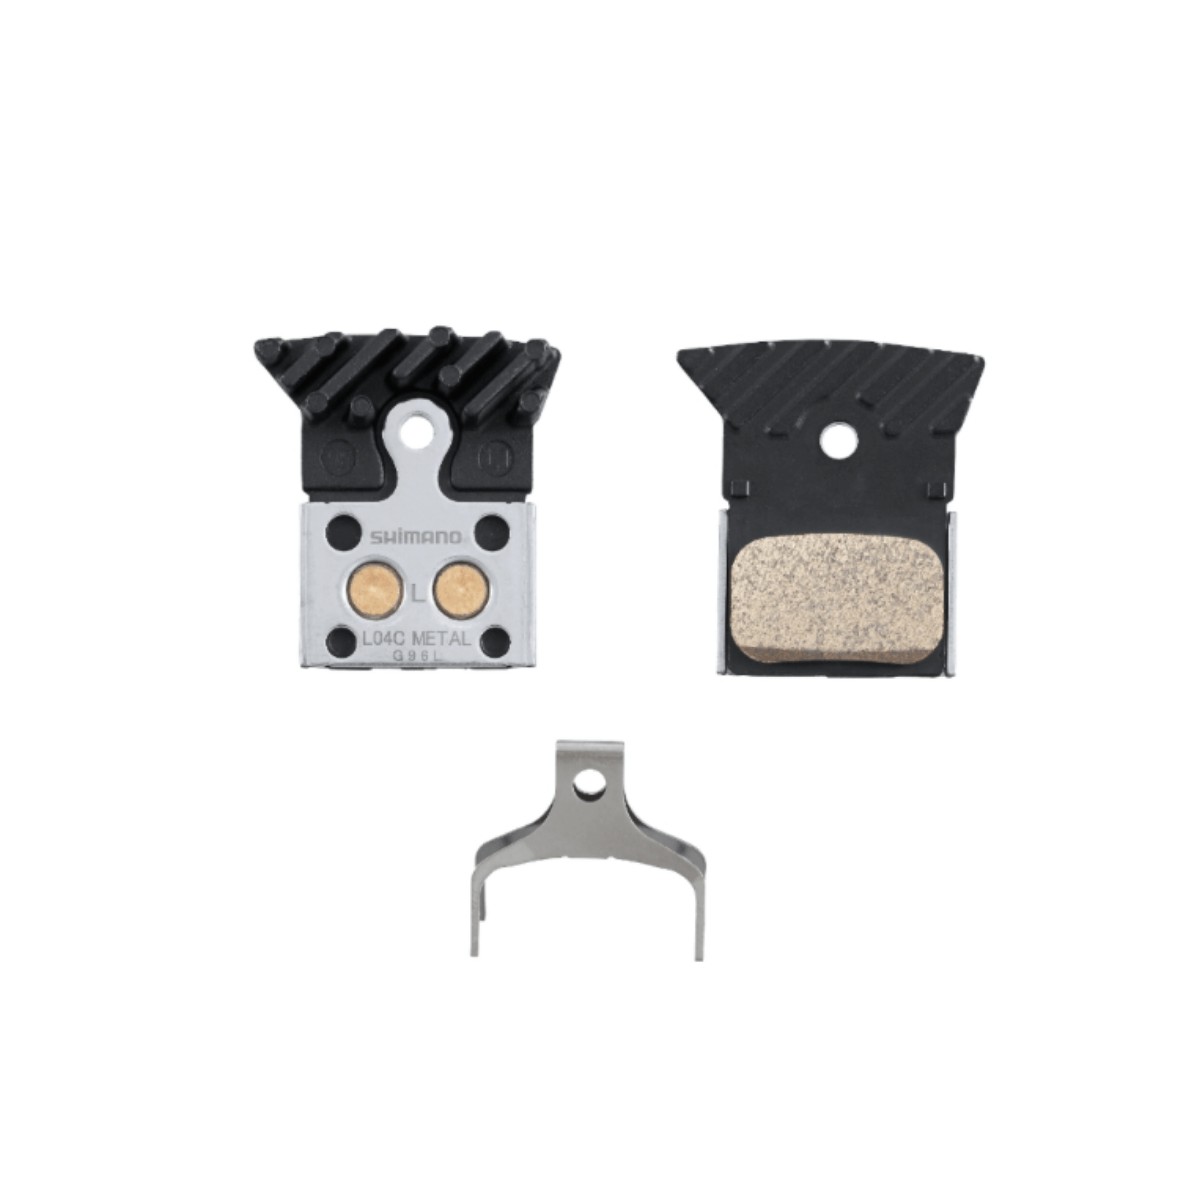 Shimano L04C cooled metallic disc brake pads